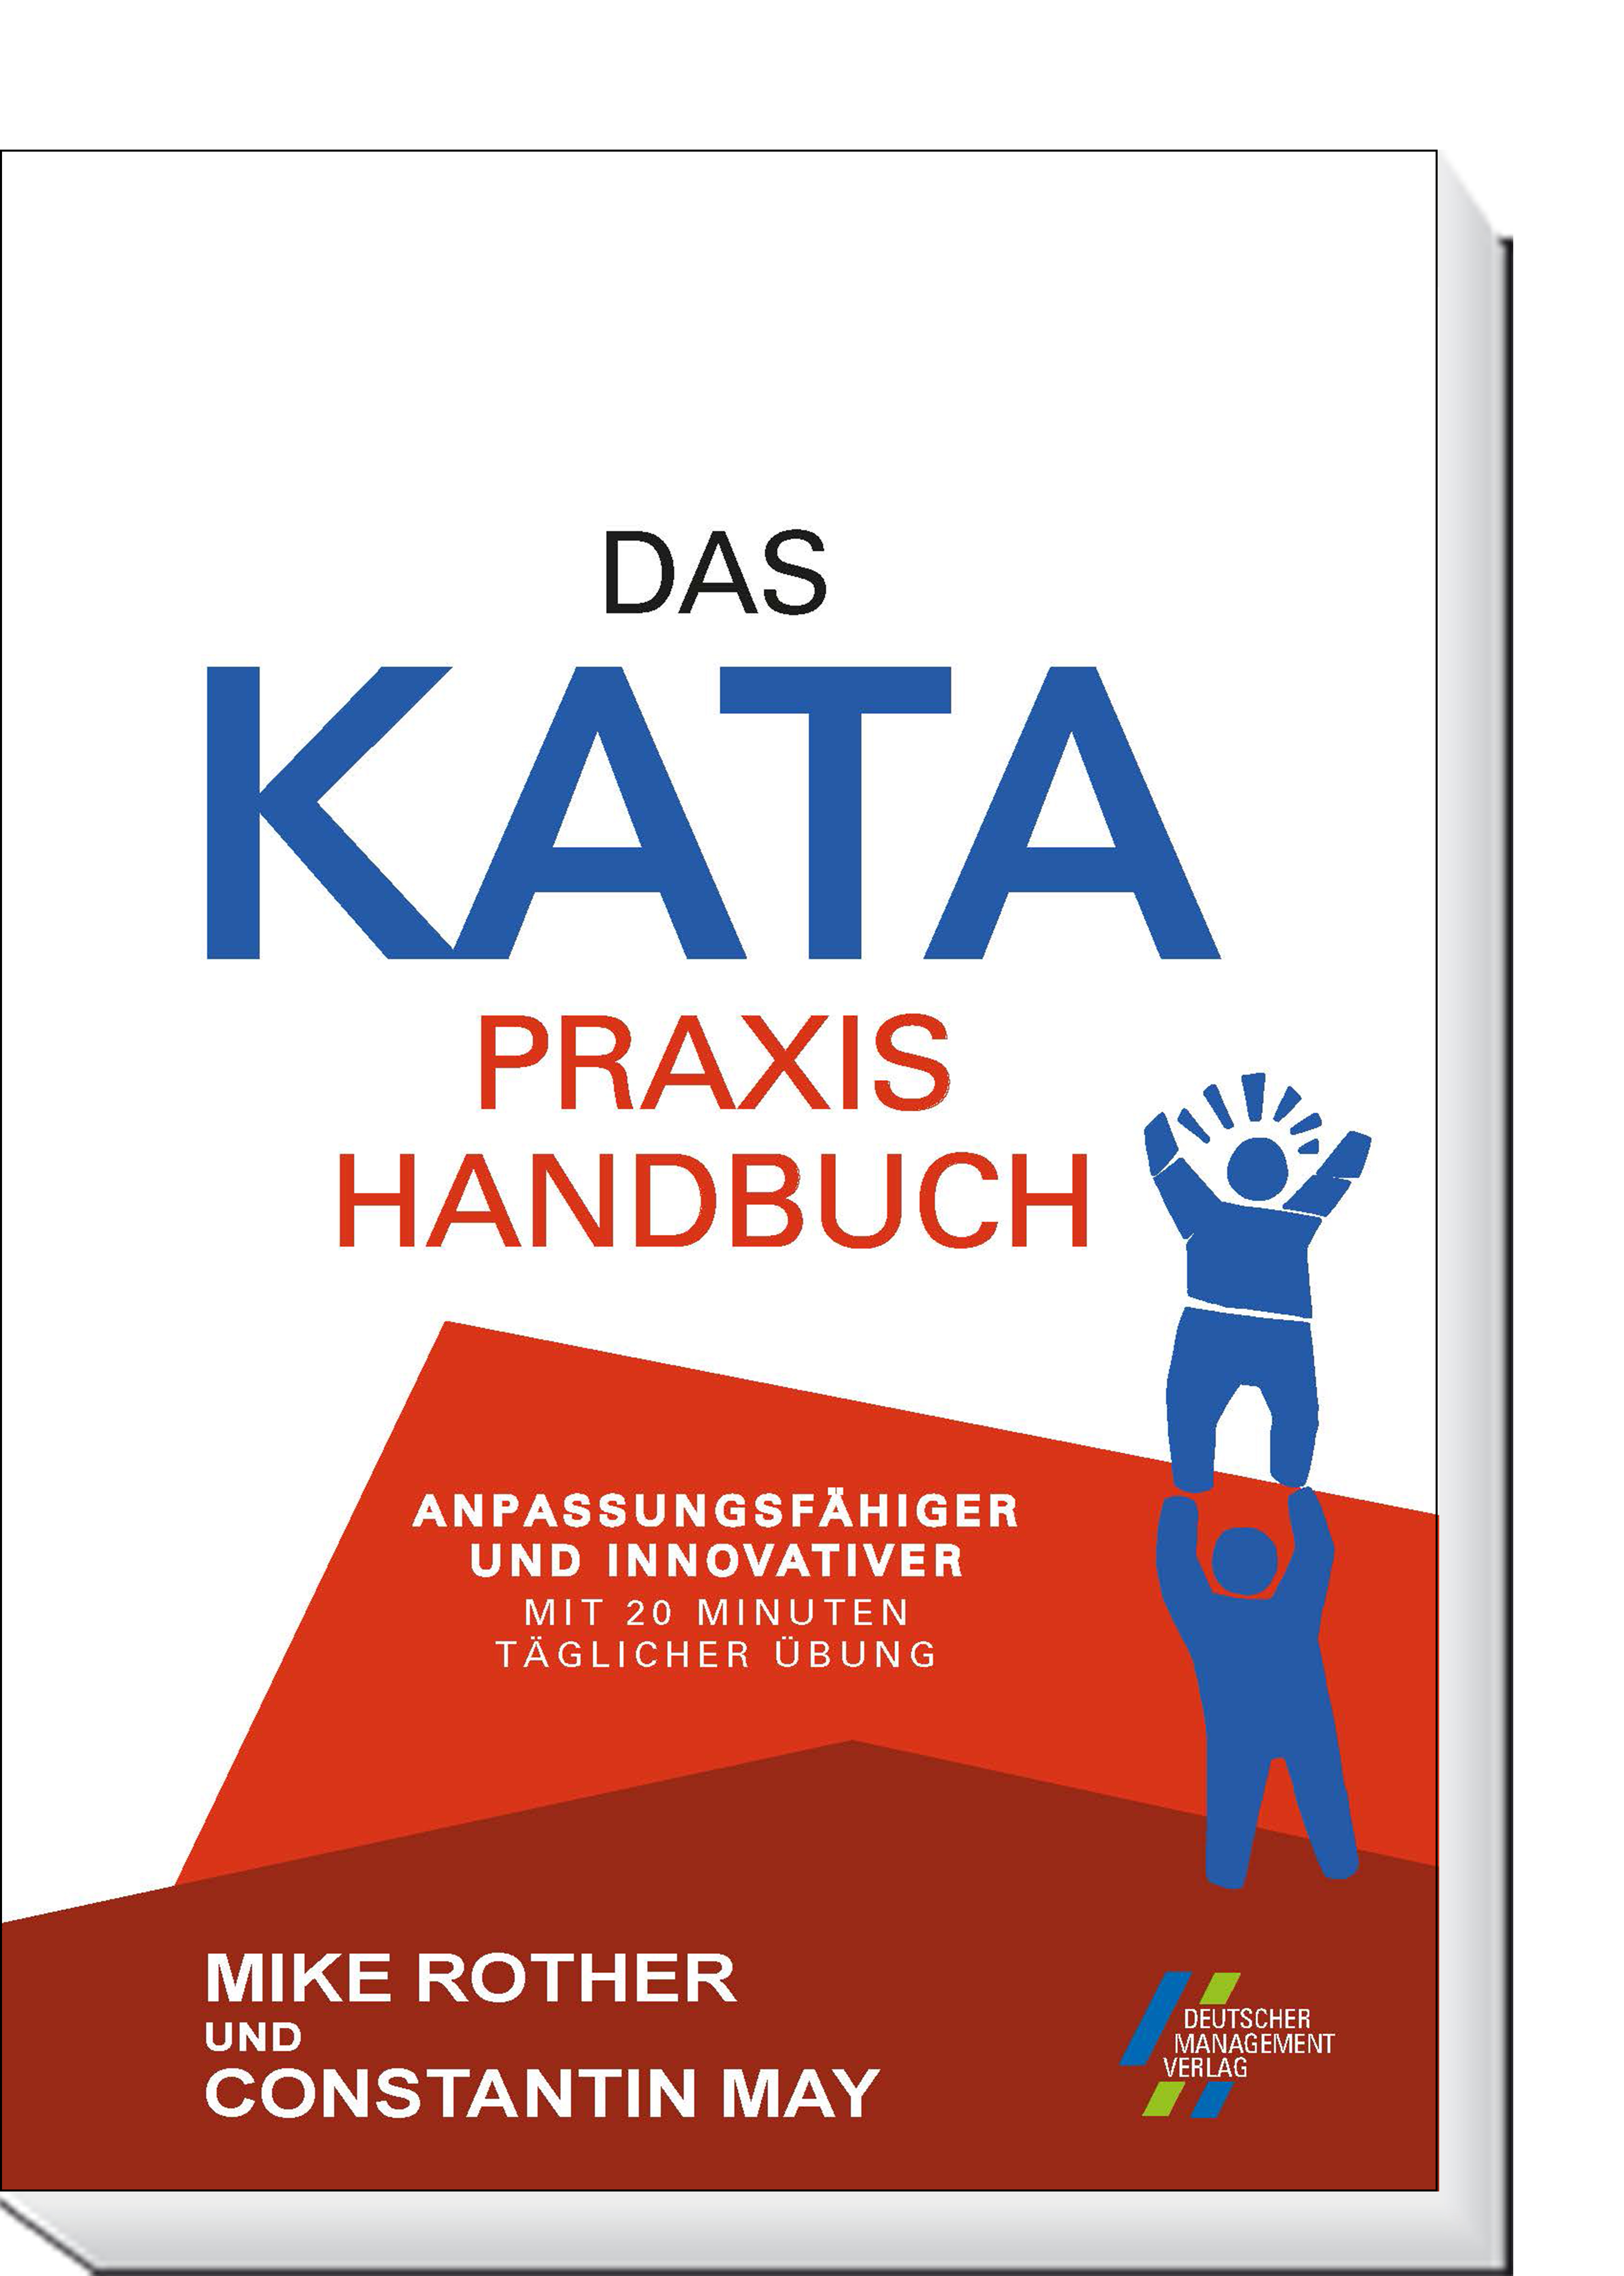 Das KATA Praxishandbuch | Minuten Übung Anpassungsfähiger täglicher innovativer und 20 CETPM mit 